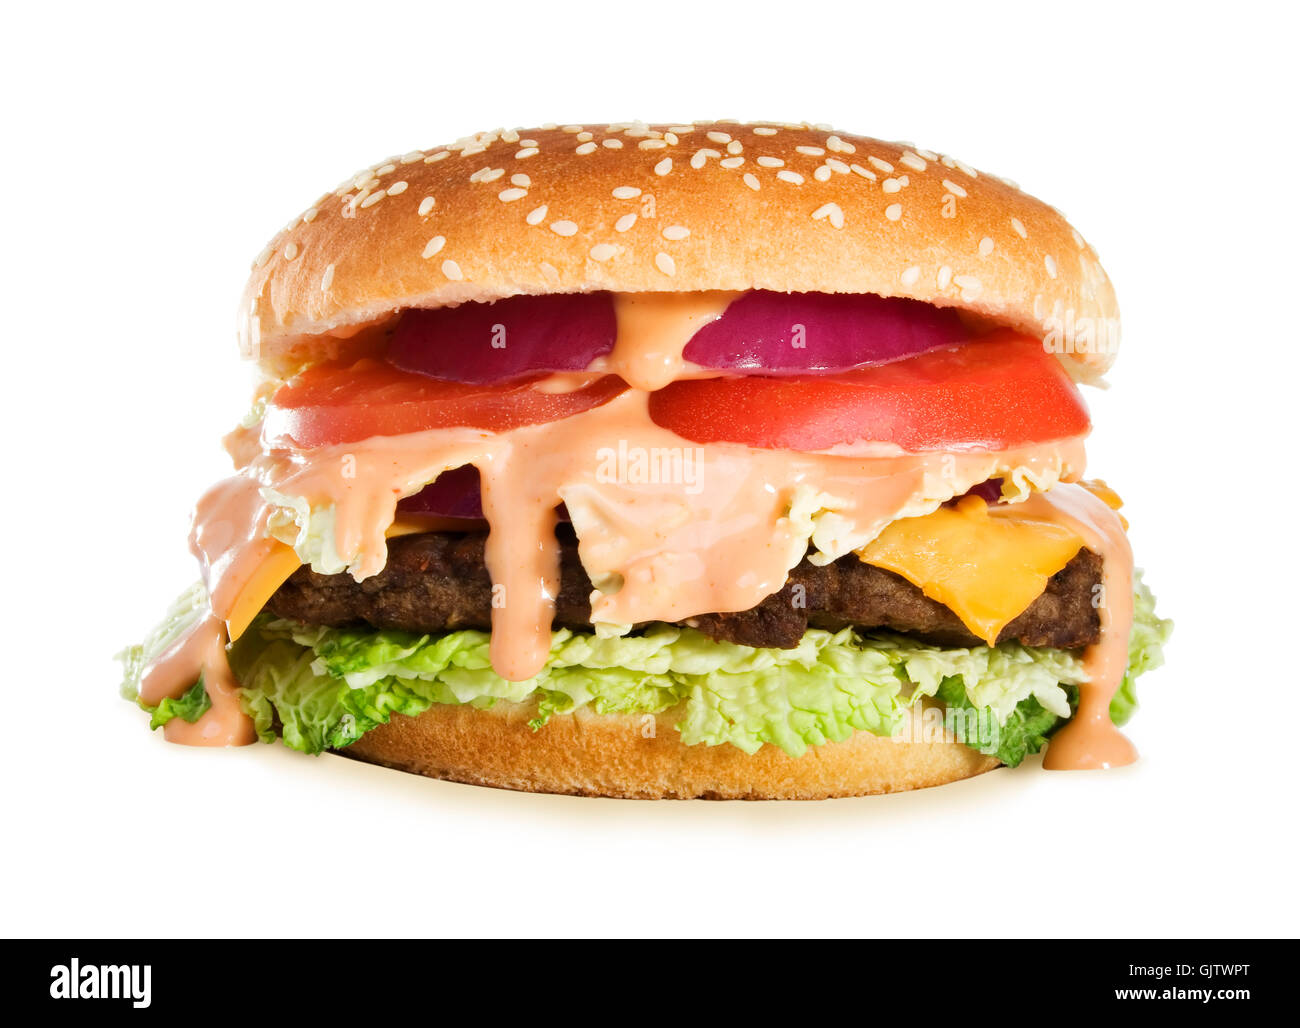 hamburger burger cheeseburger Stock Photo